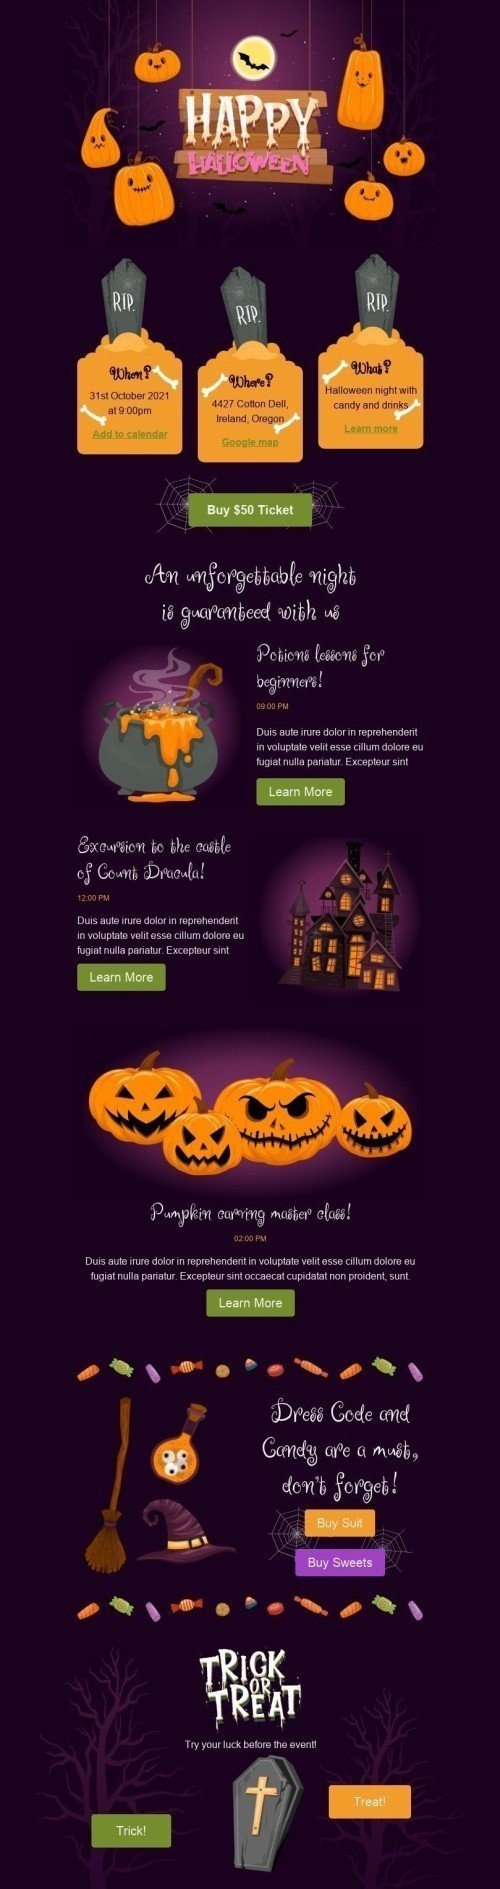 Plantilla de correo electrónico «Noche de Halloween» de Halloween para la industria de Hobbies Vista de móvil